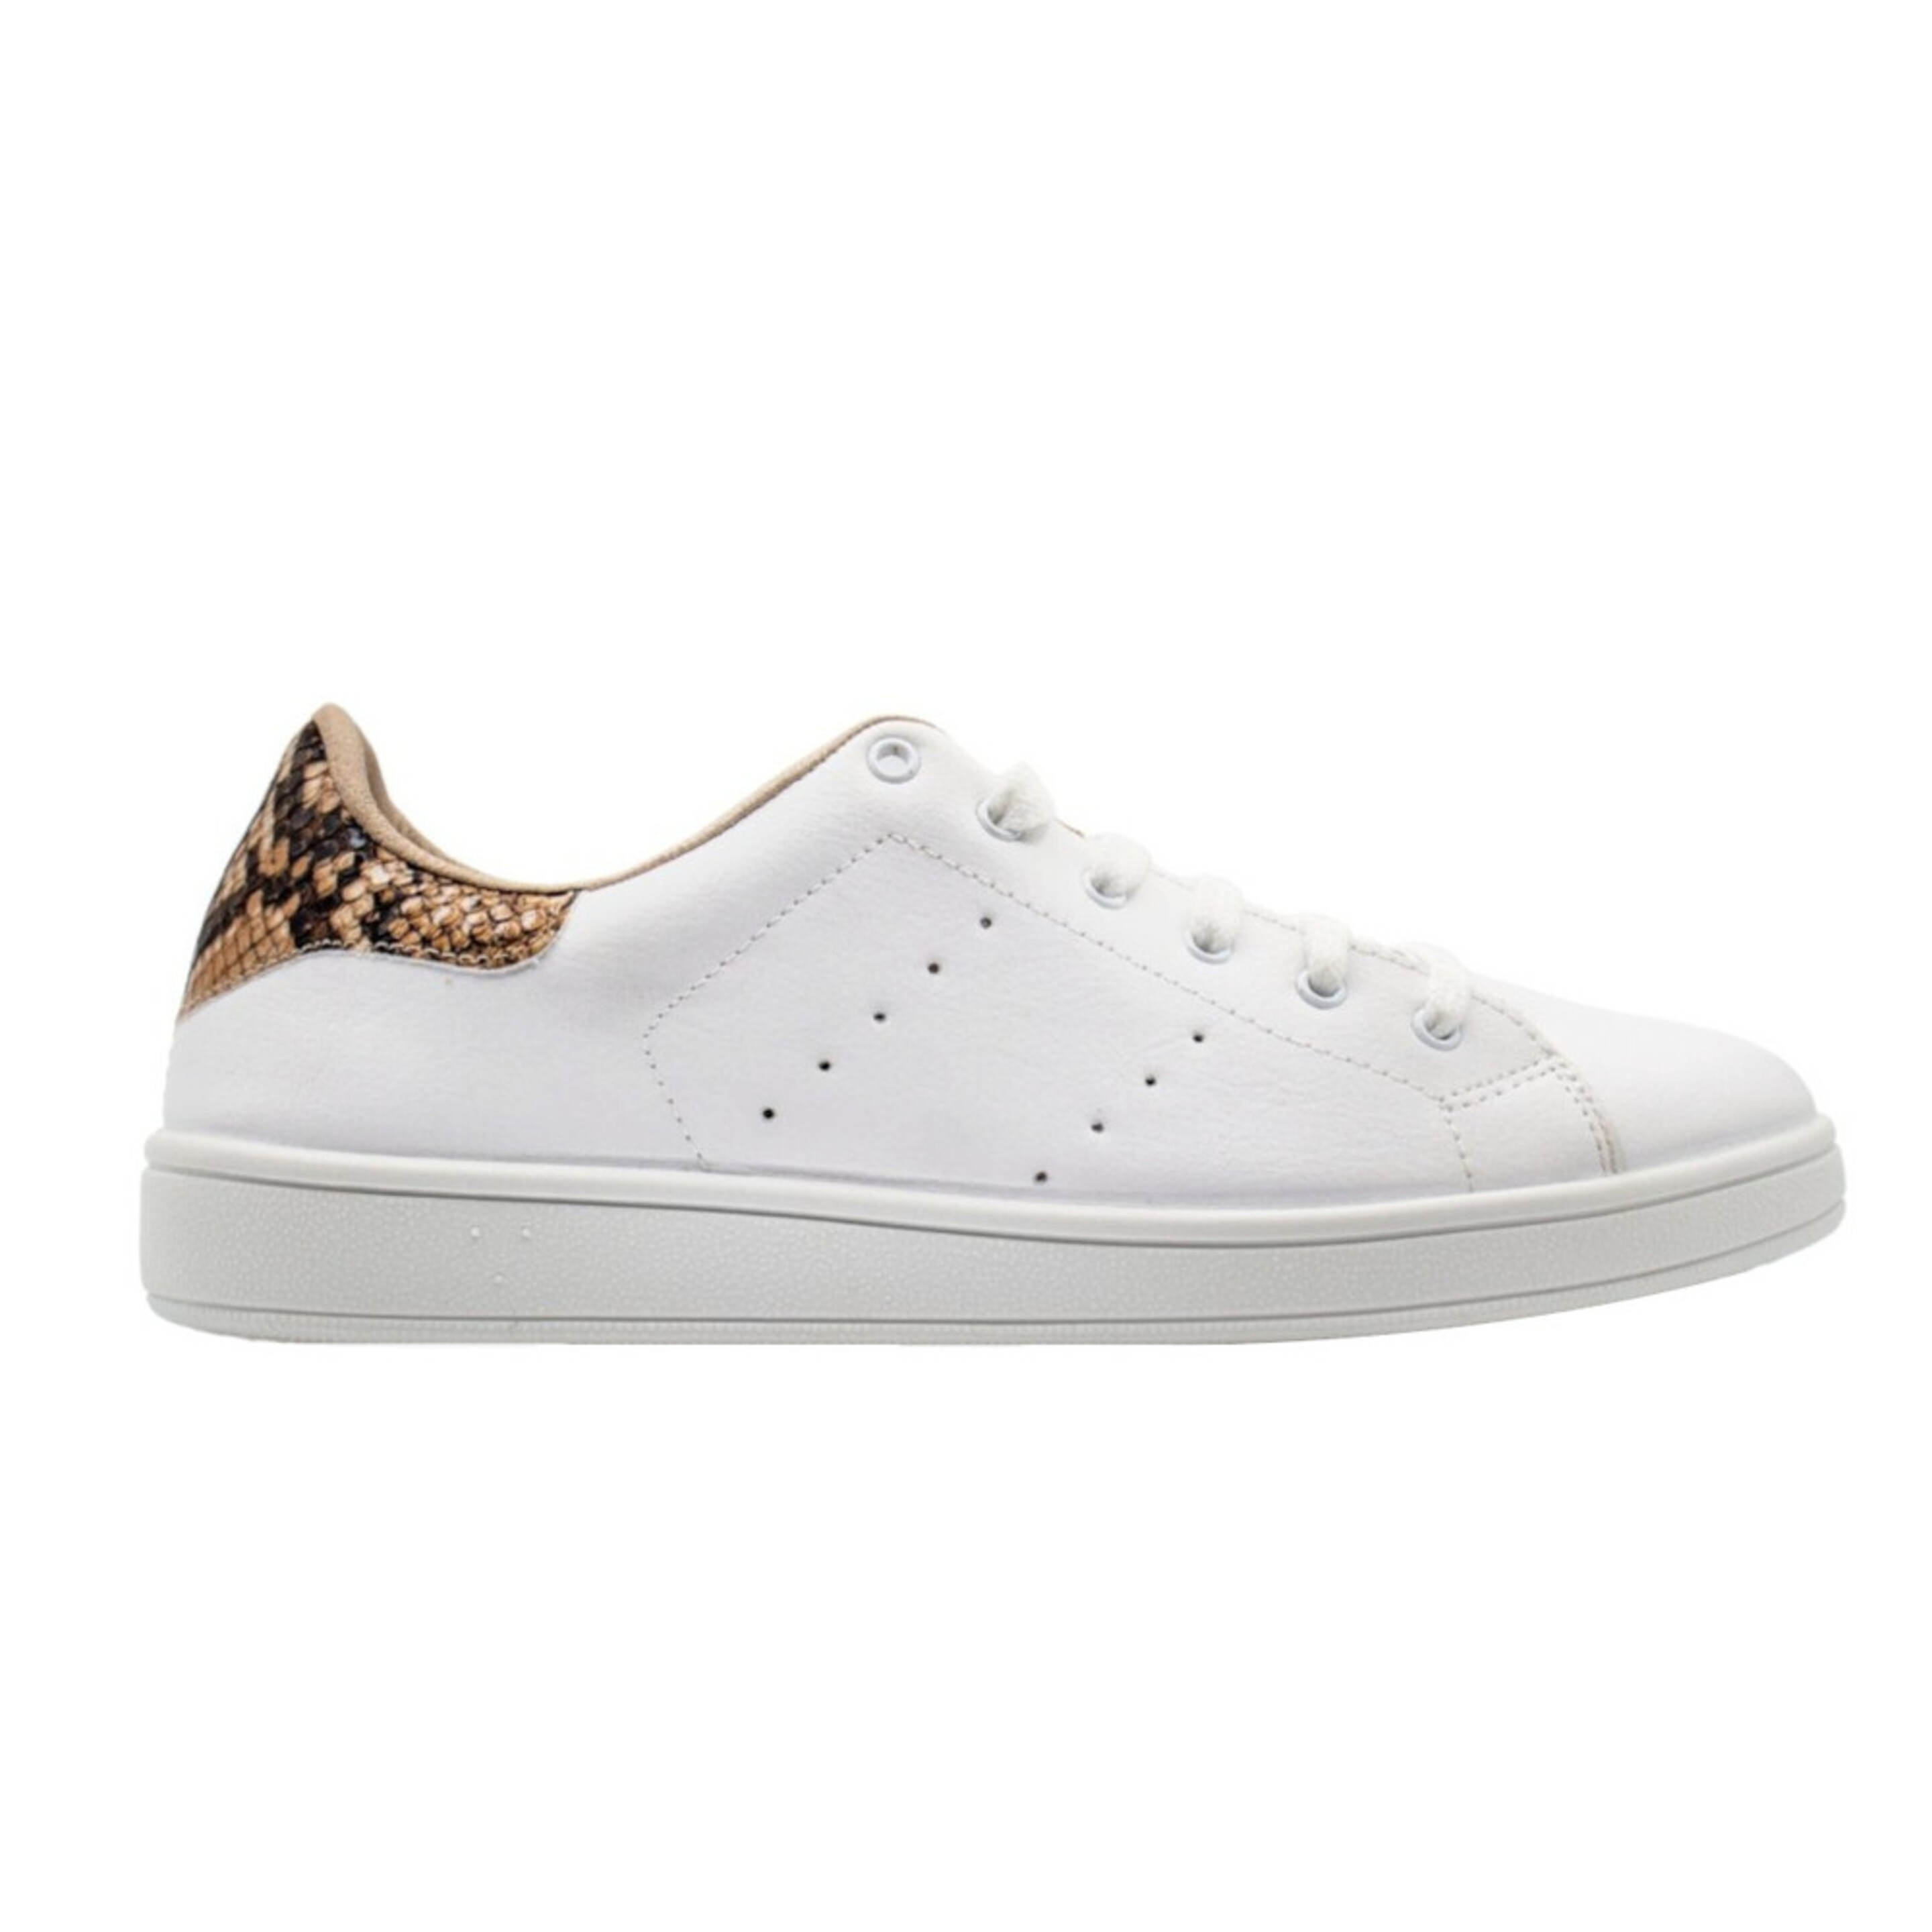 Sneaker Owlet Shoes Python - Blanco/Amarillo - Tu Zona Owlet  MKP